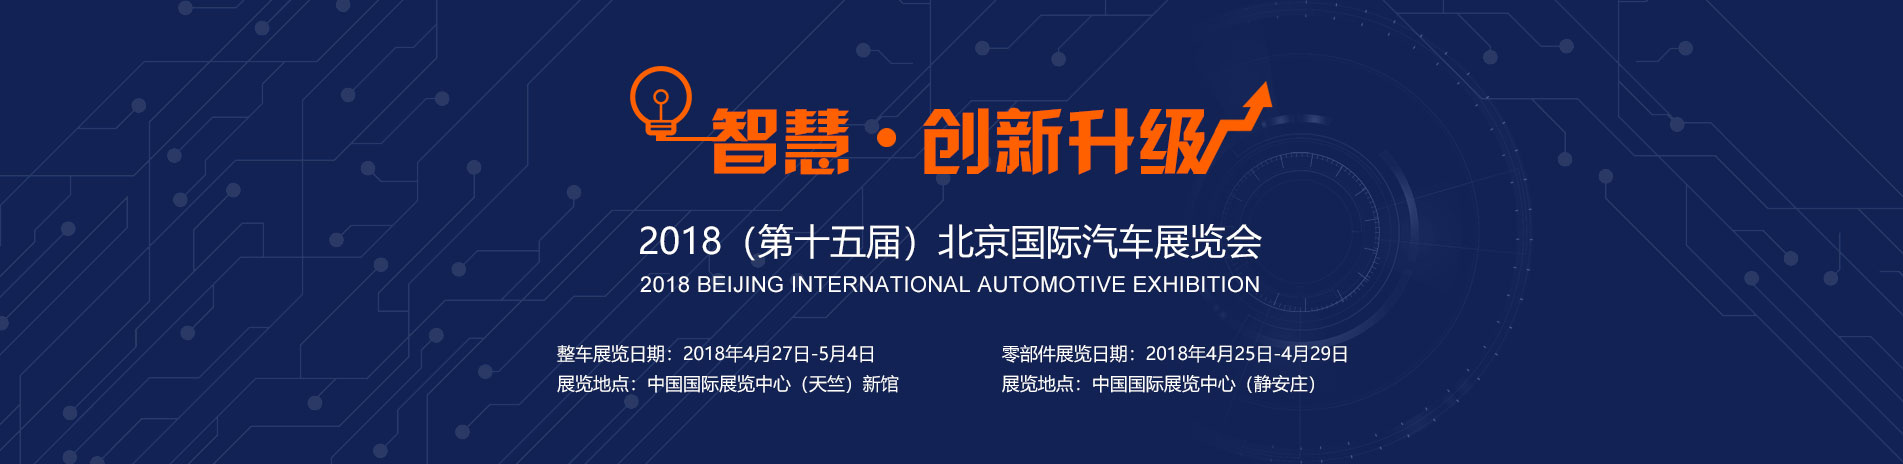 北奔重卡展台 智慧 · 创新升级 2018北京国际汽车展览会